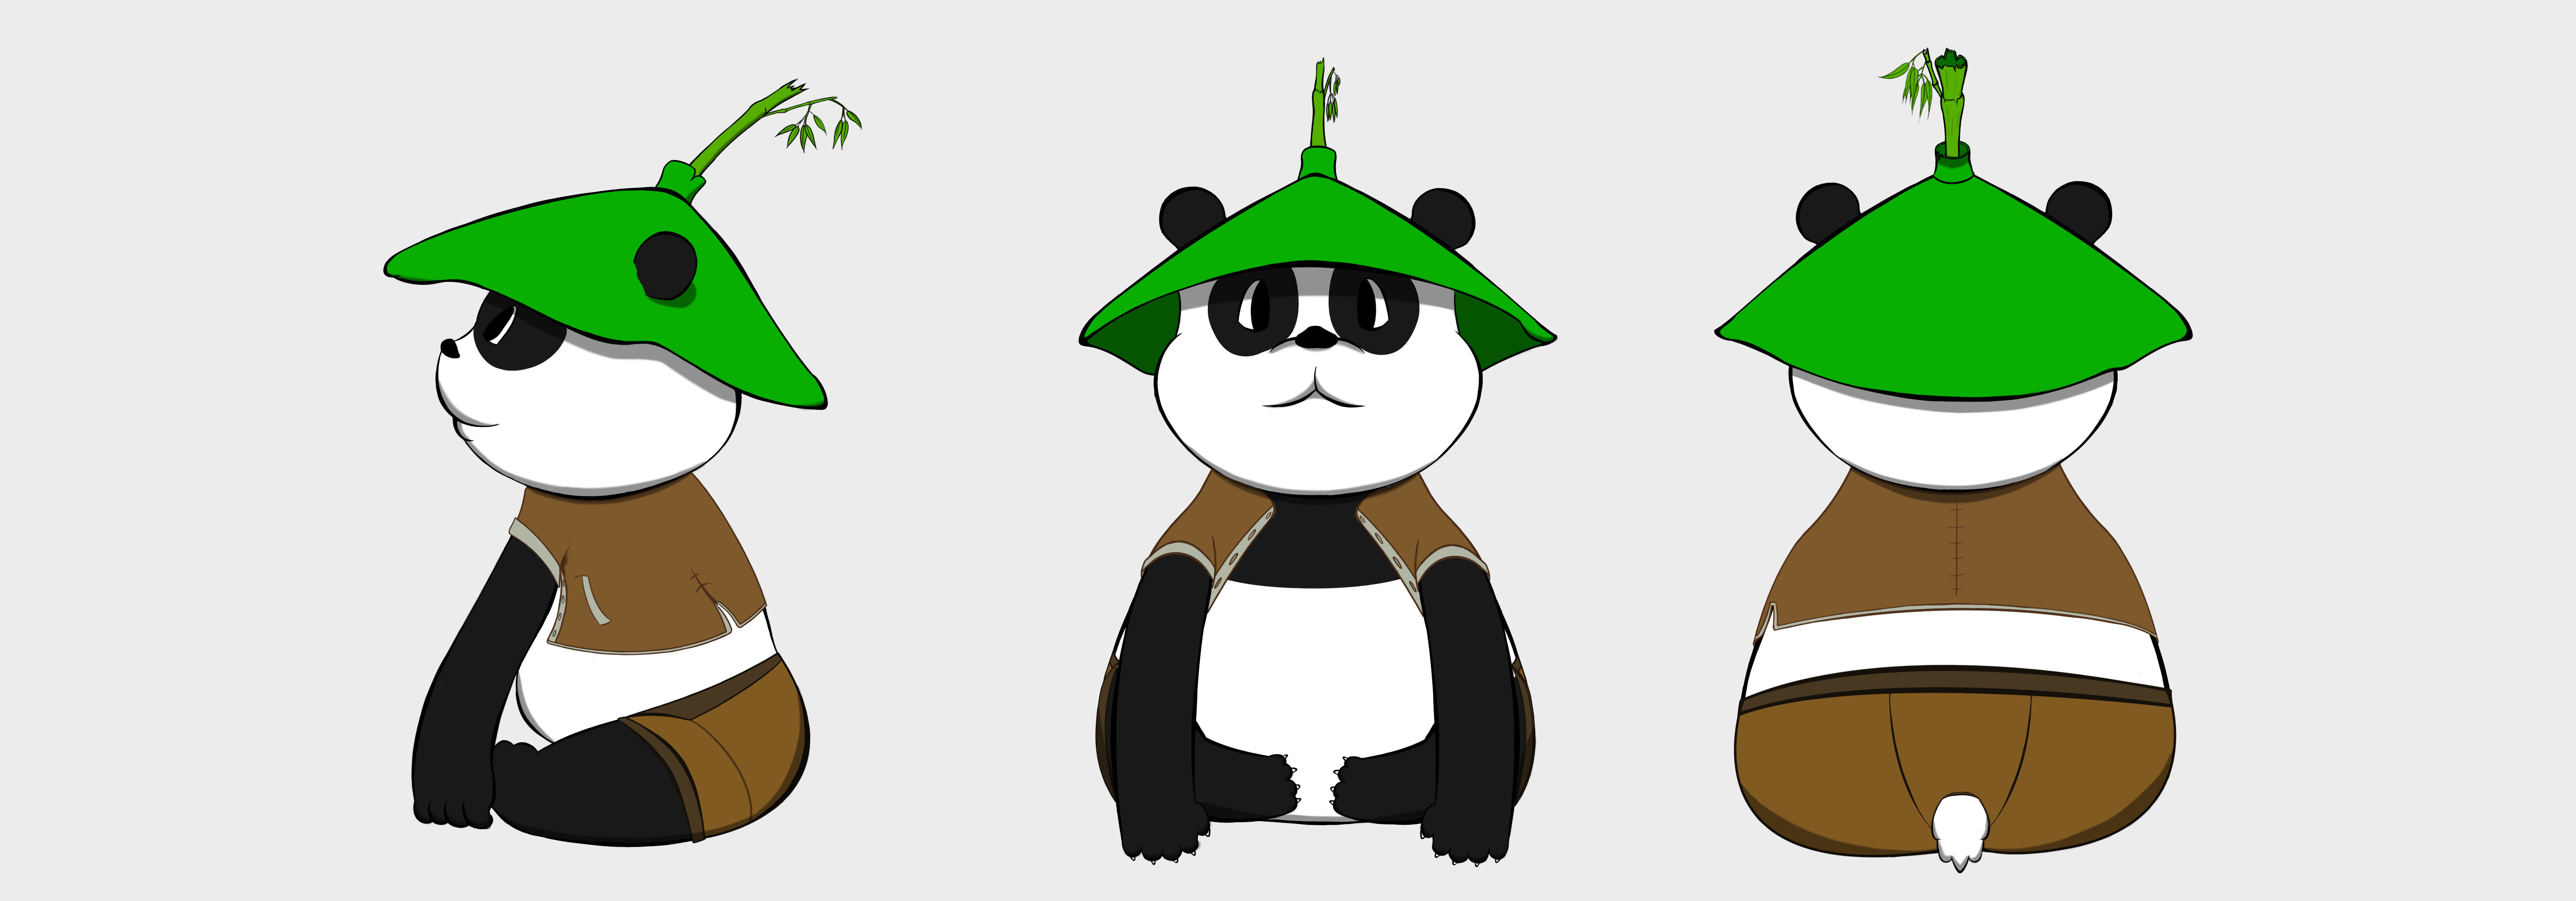 中国大熊猫形象征集